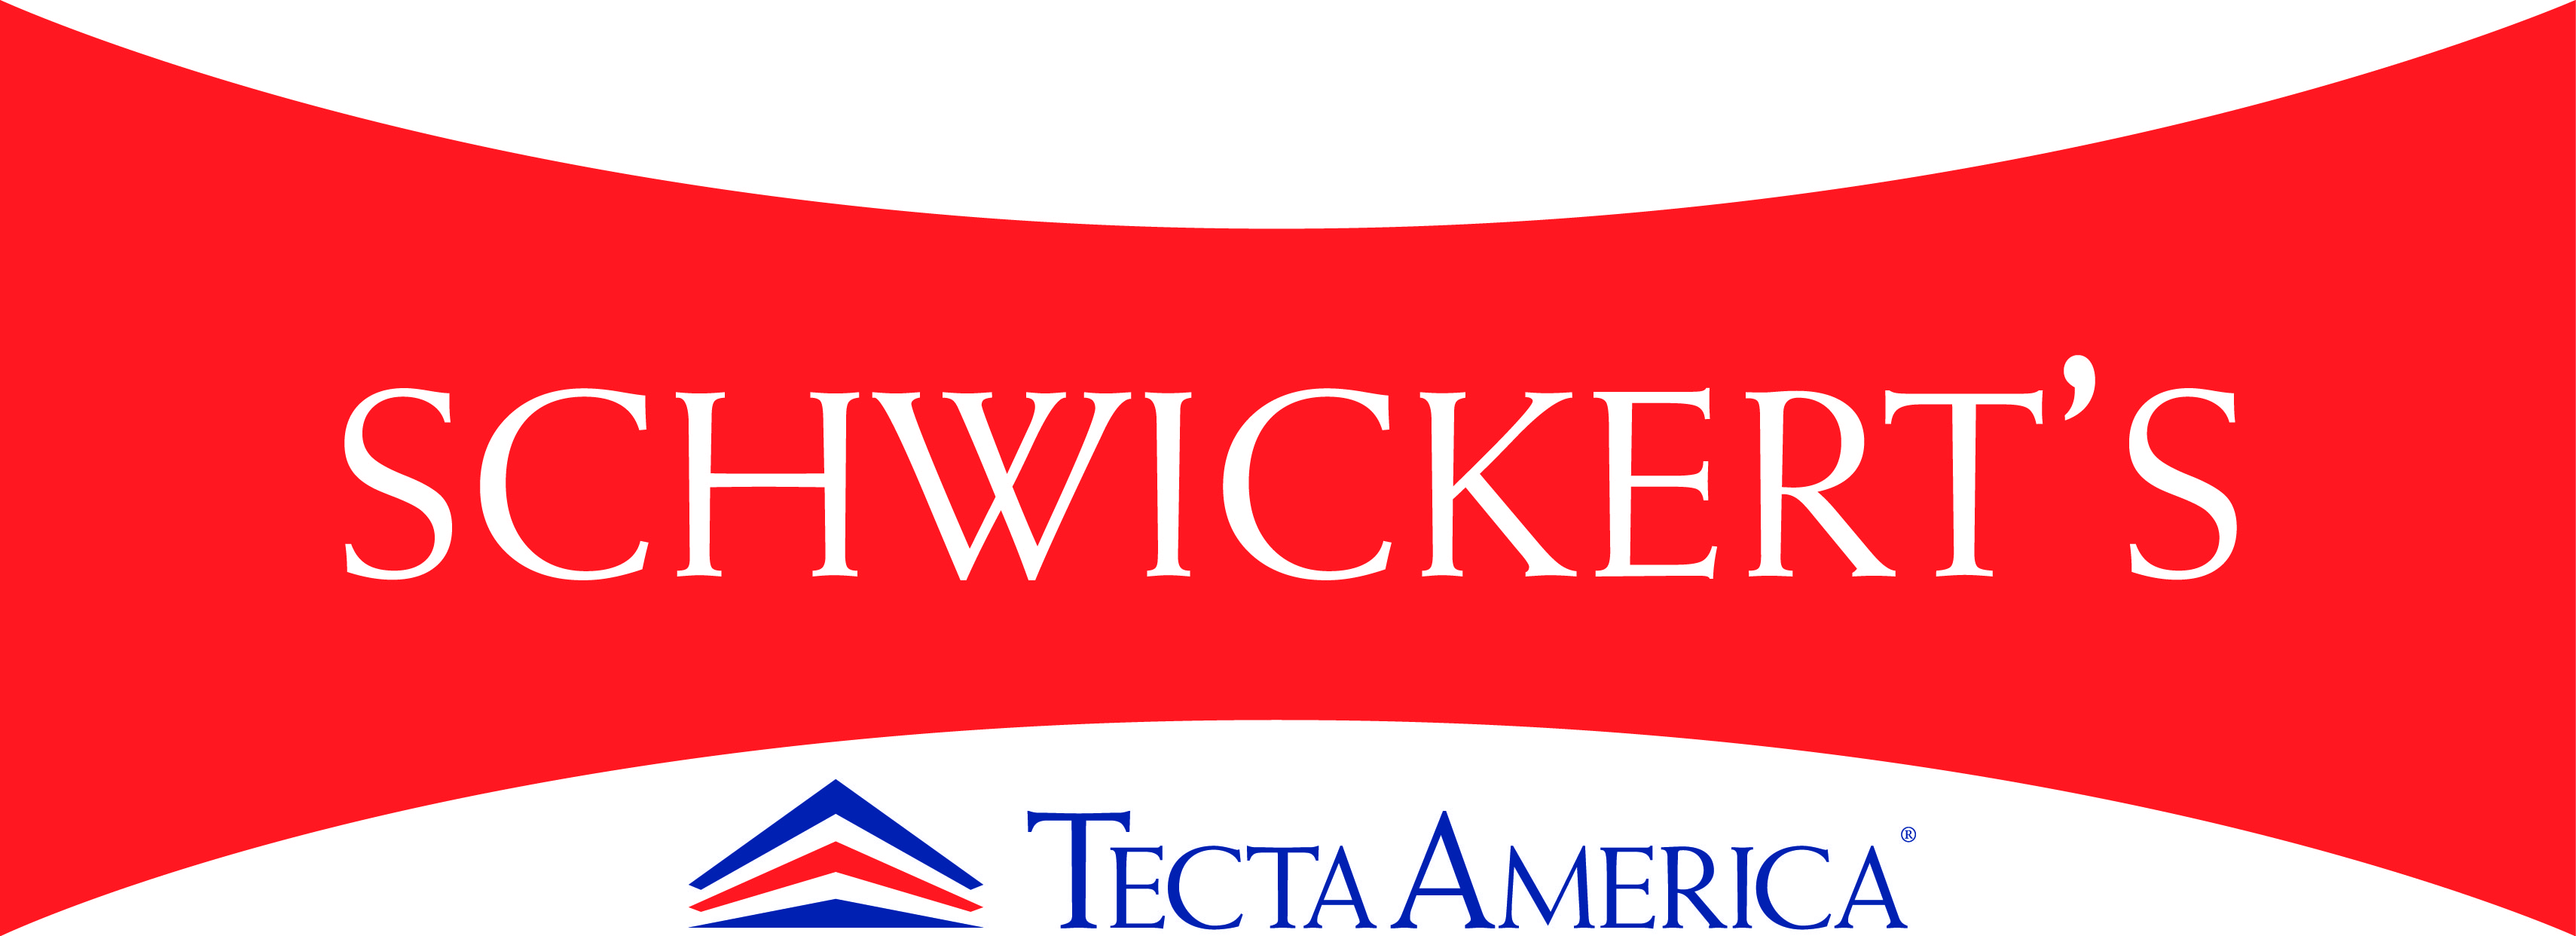 Schwickert's Tecta America - Mankato